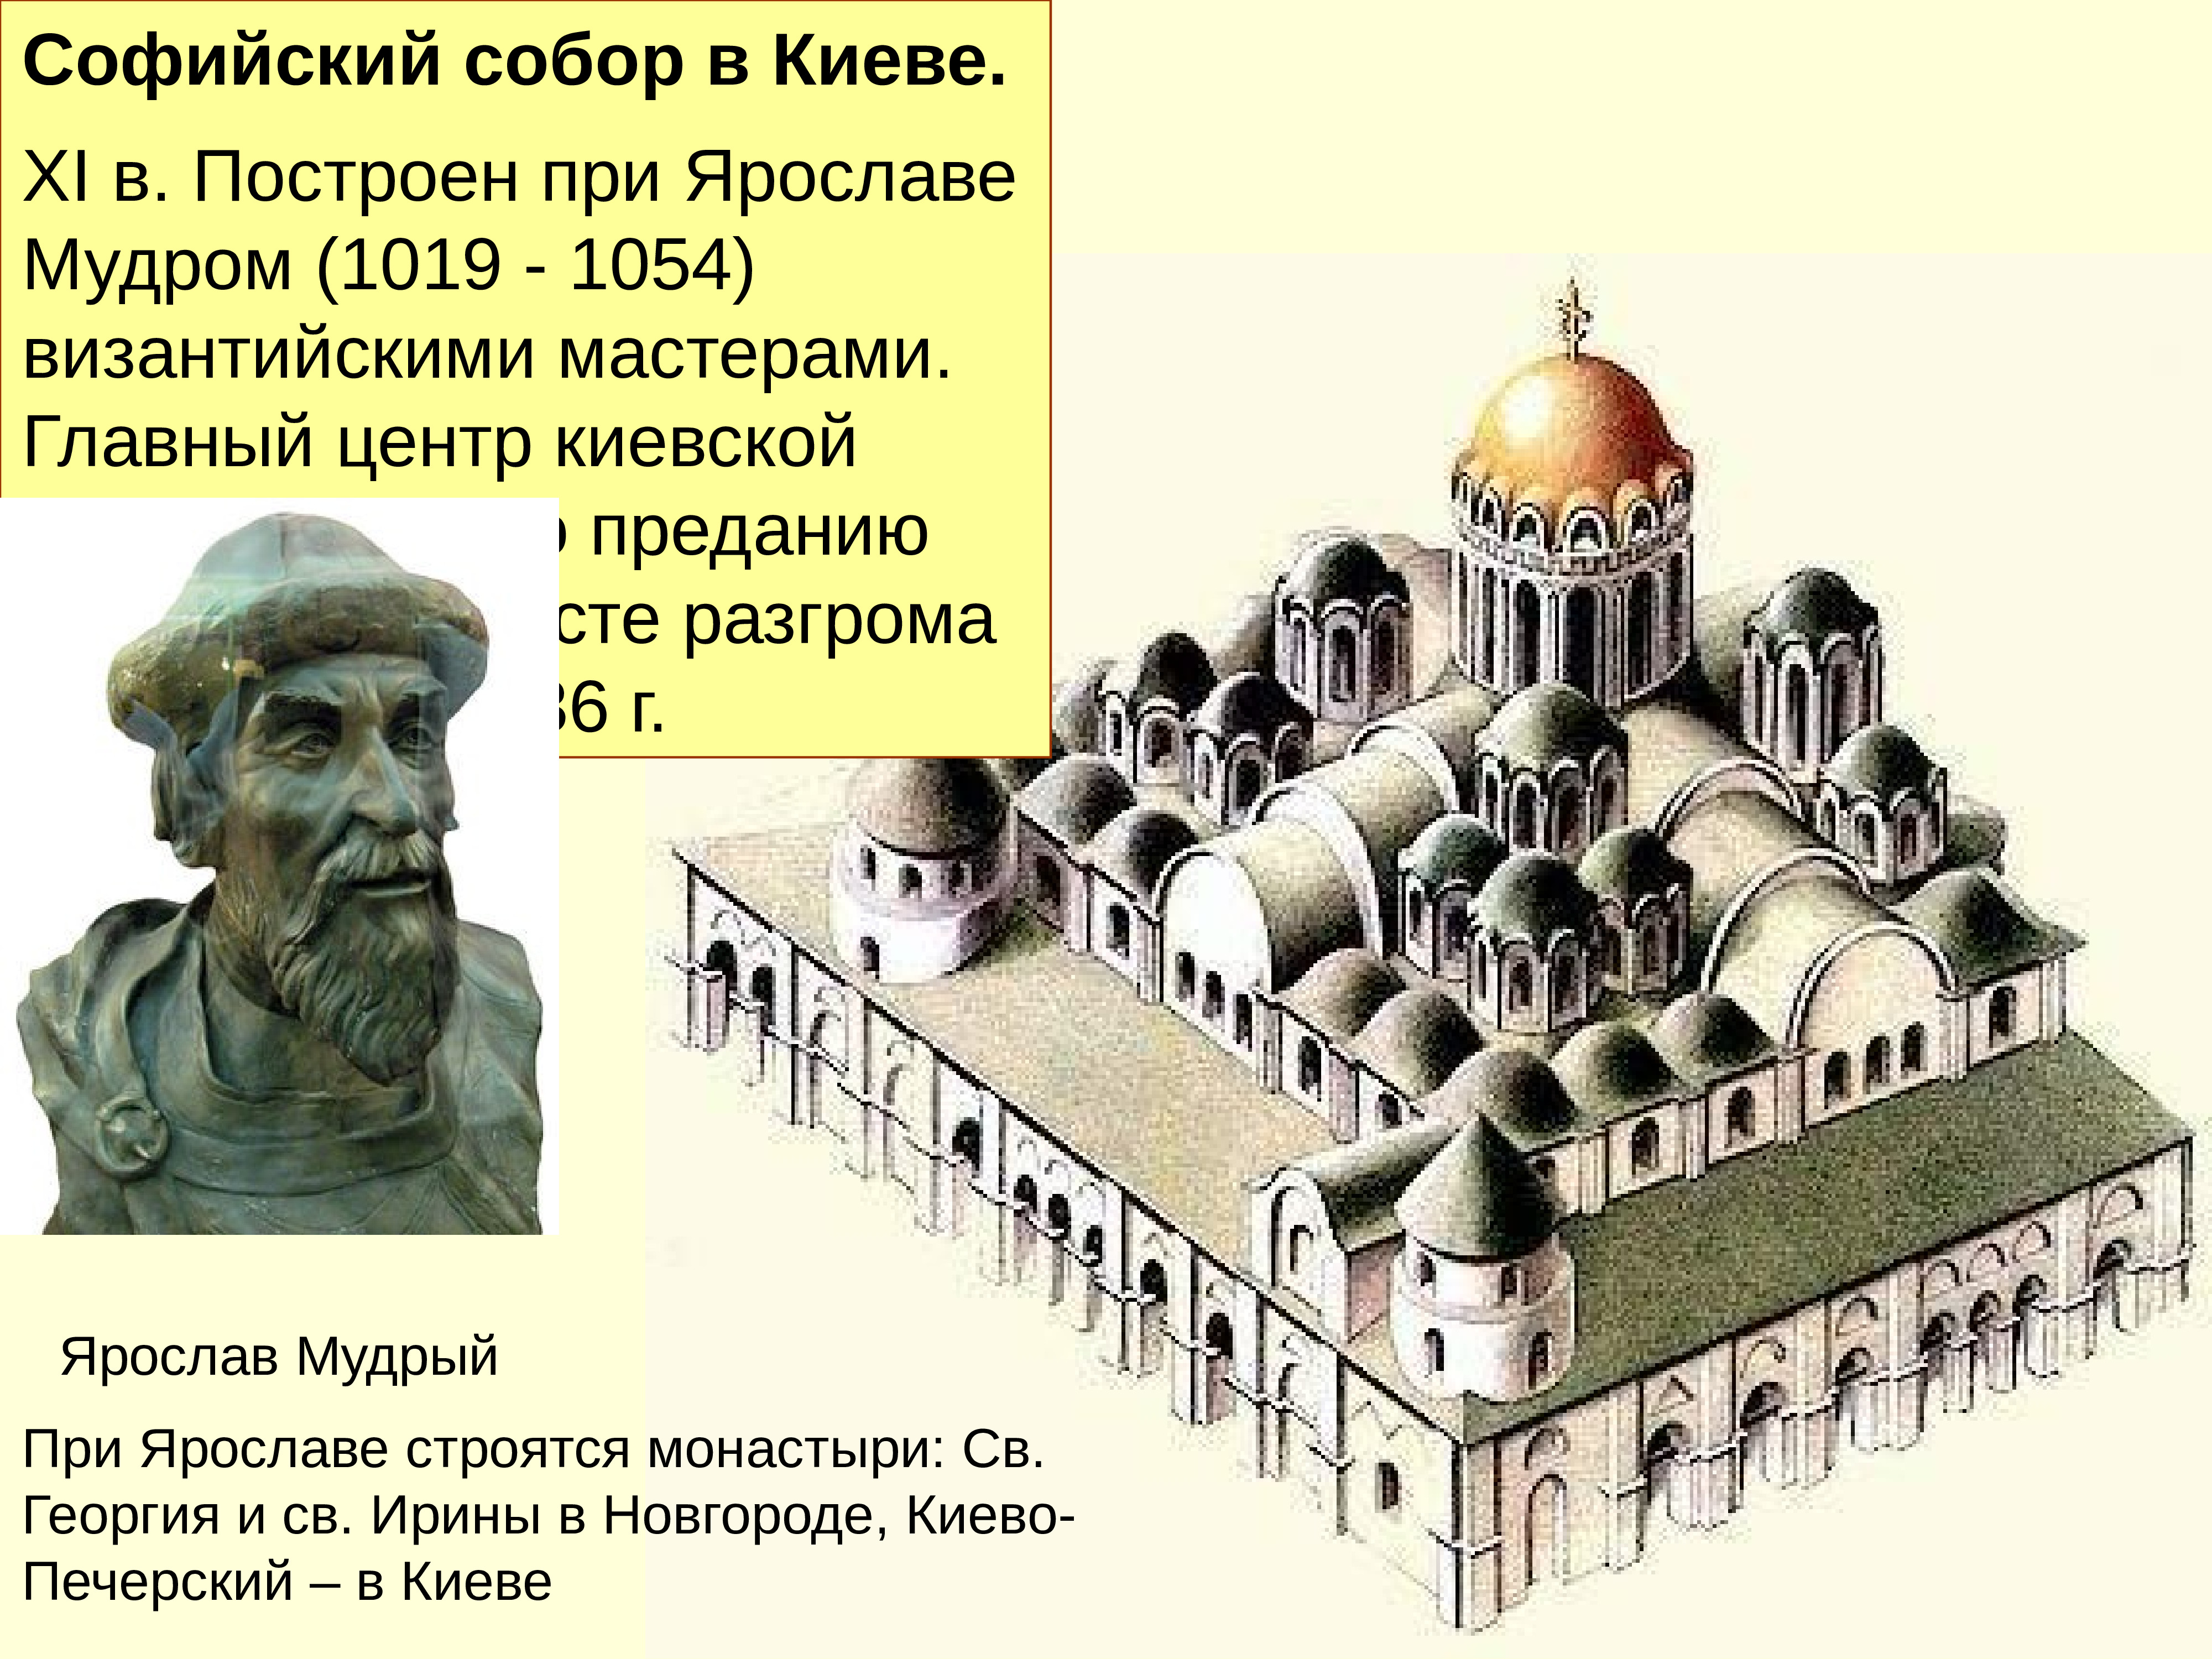 Софийский собор в Киеве 1037 при Ярославе мудром